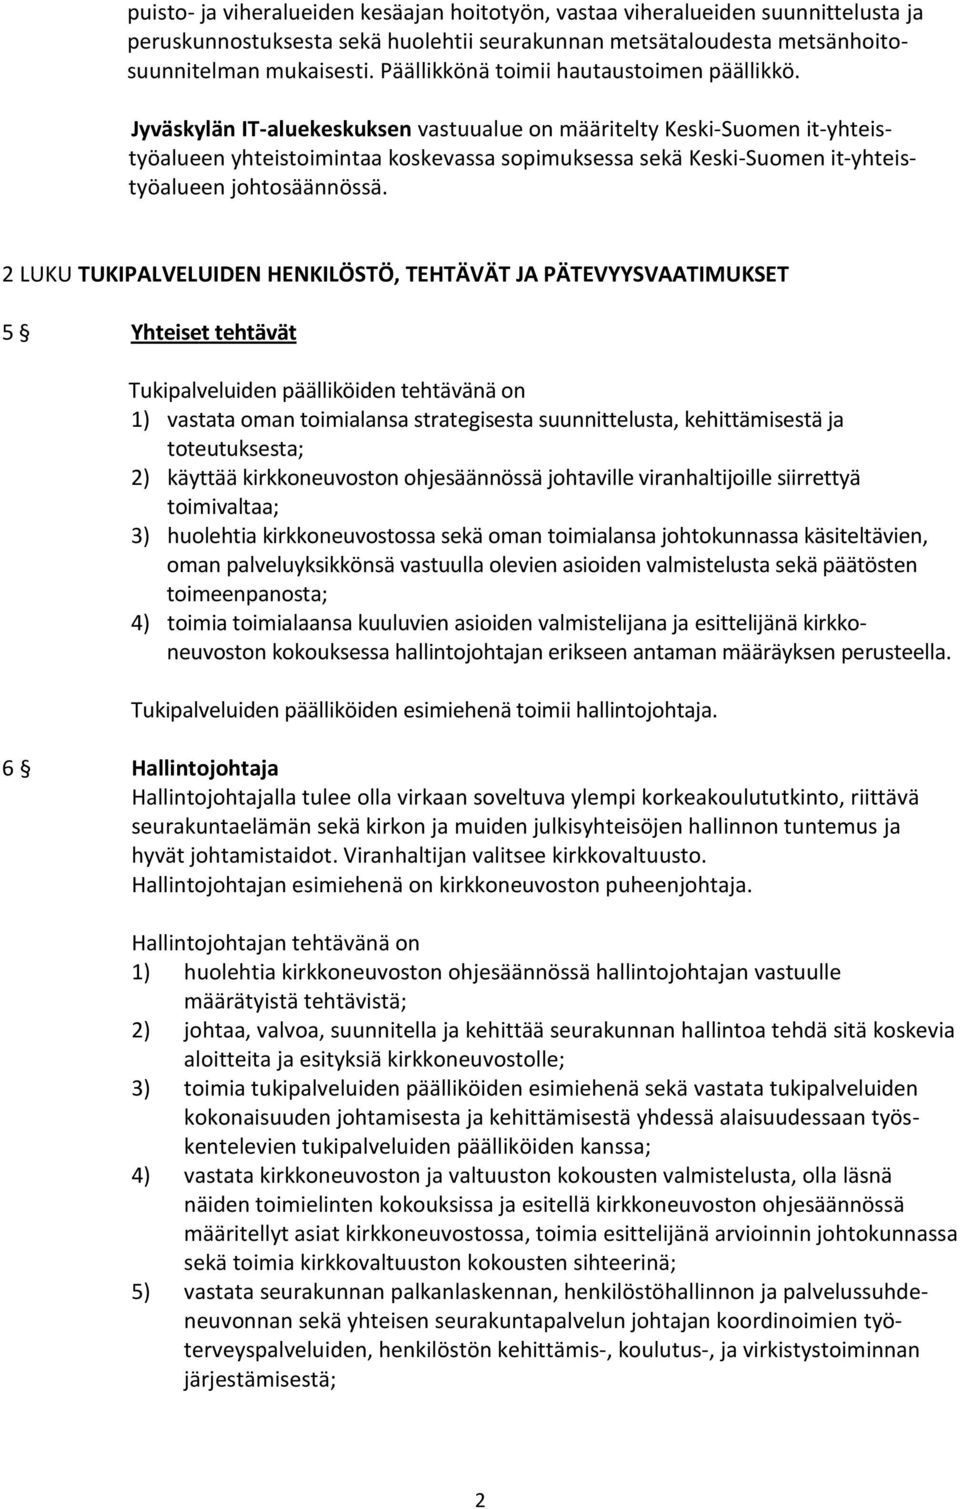 Jyväskylän IT-aluekeskuksen vastuualue on määritelty Keski-Suomen it-yhteistyöalueen yhteistoimintaa koskevassa sopimuksessa sekä Keski-Suomen it-yhteistyöalueen johtosäännössä.